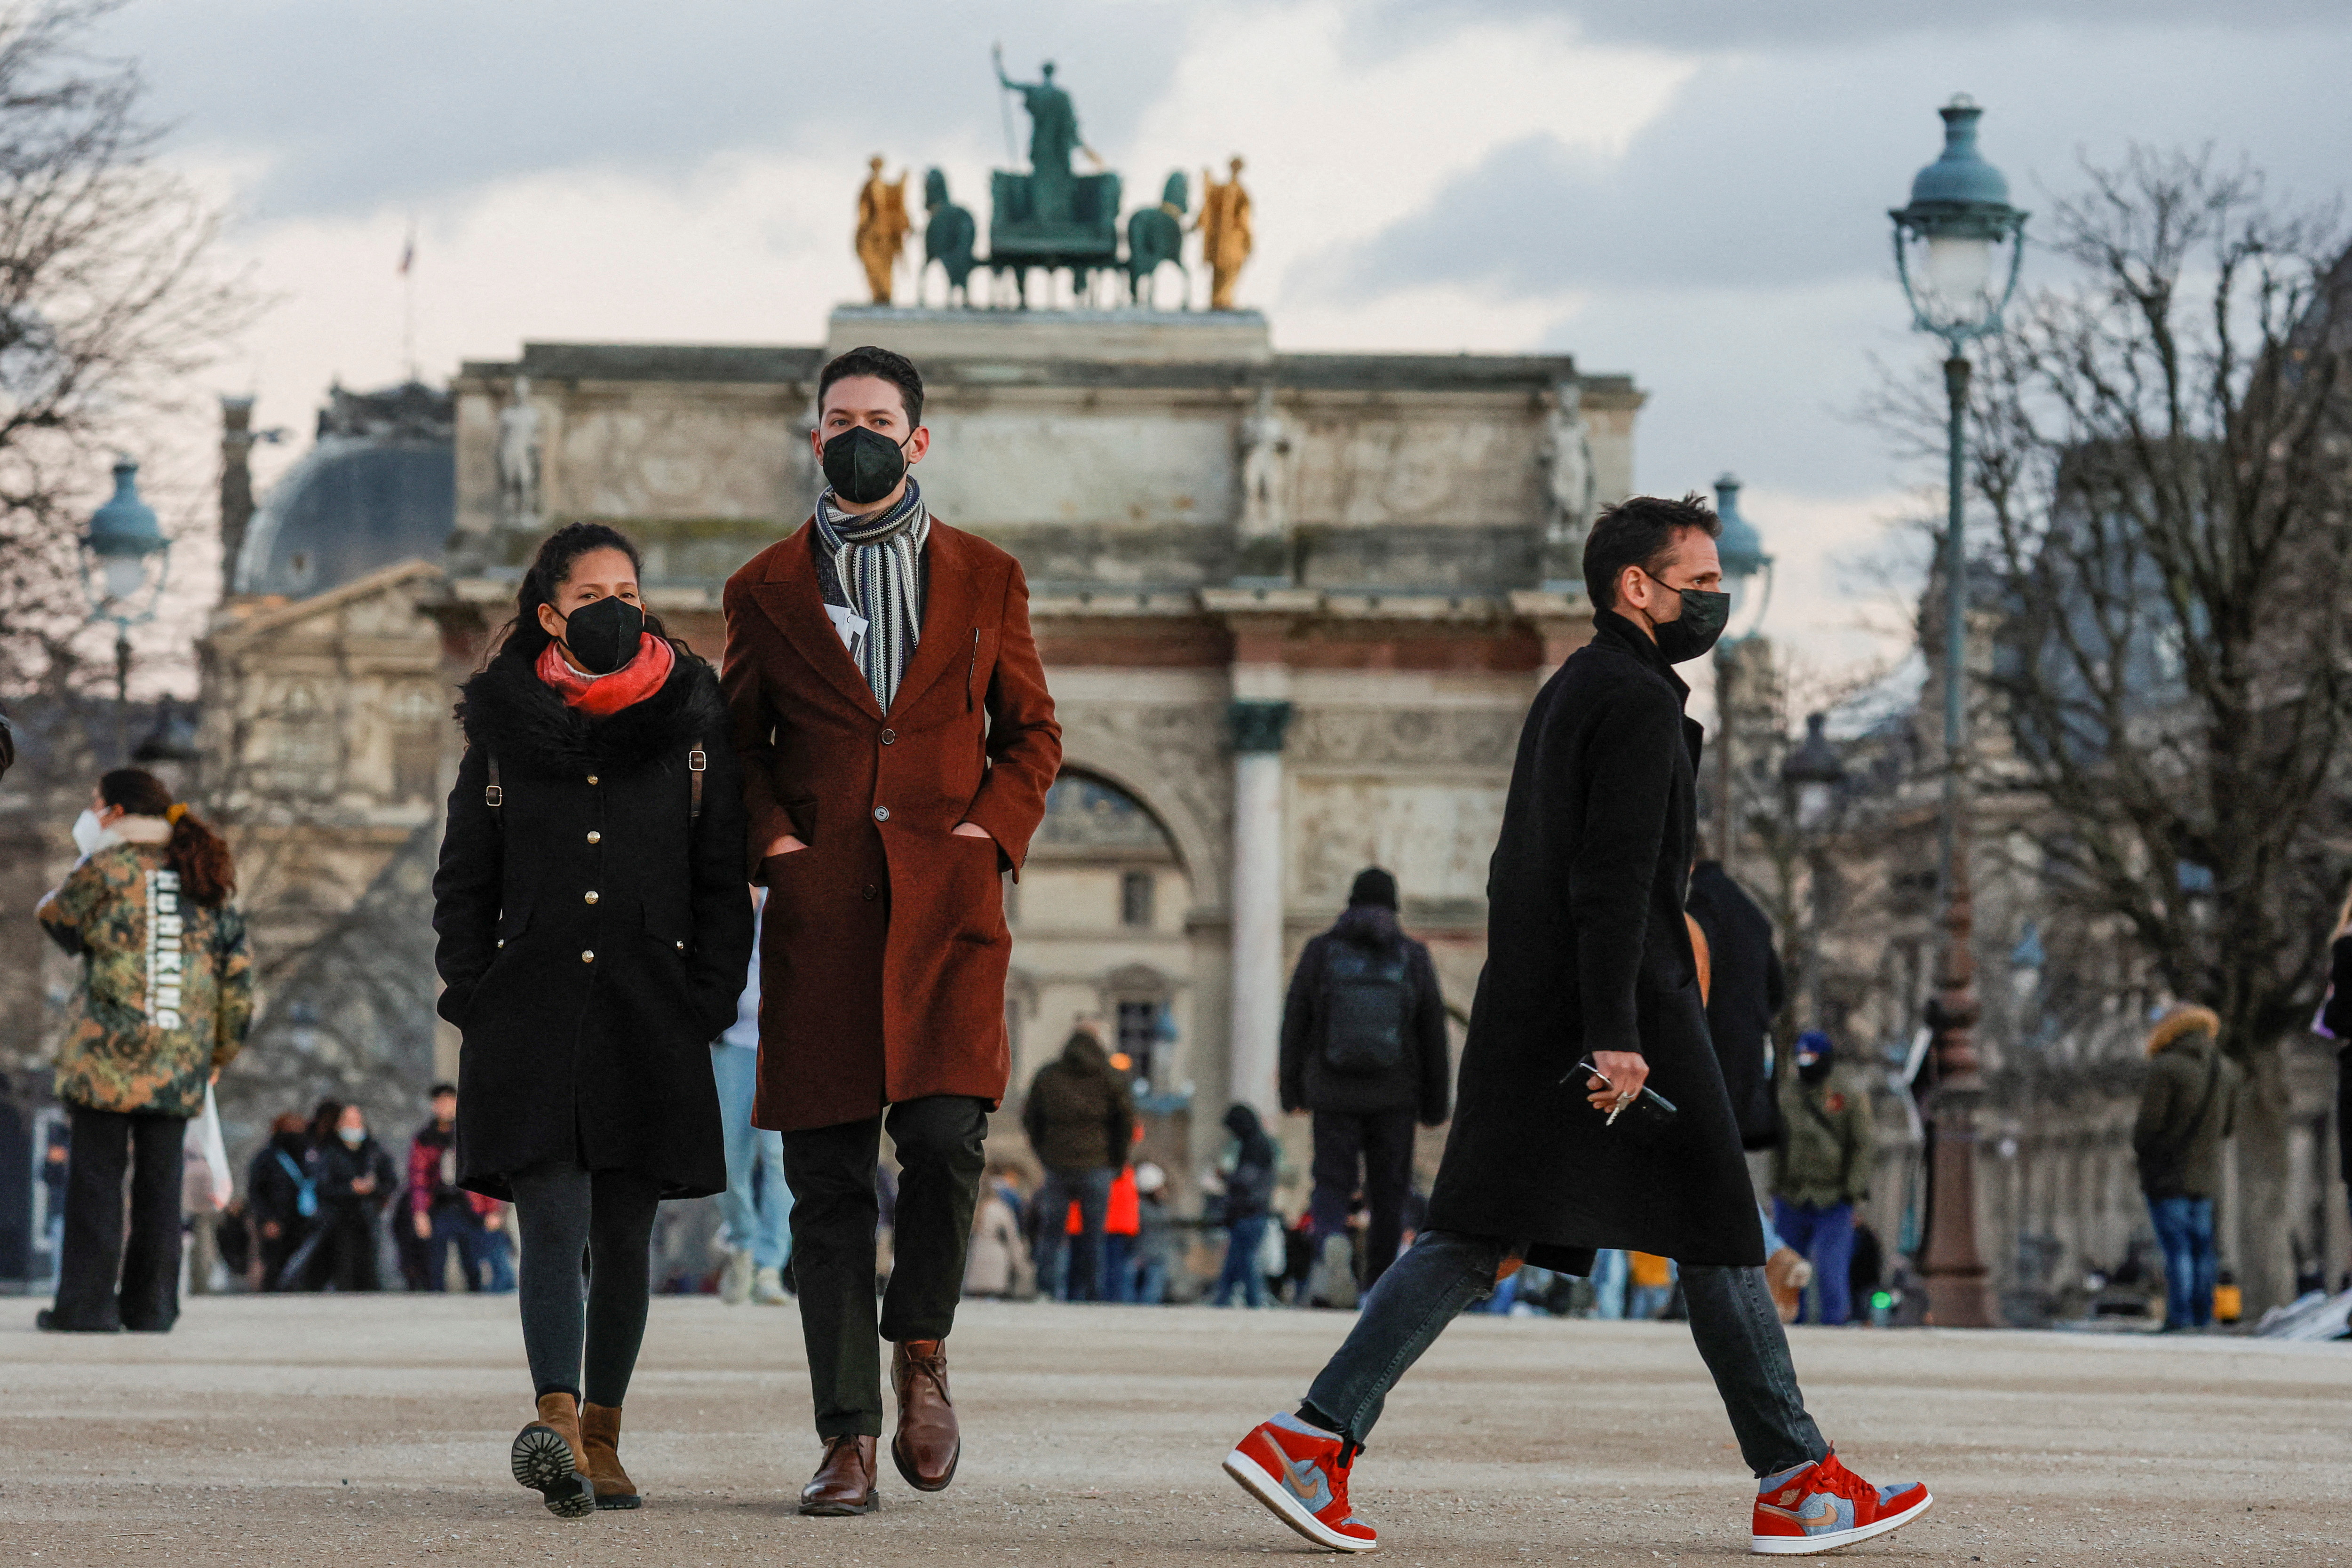 Хората, носещи защитни маски за лице, се разхождат в градините Тюйлери в Париж на фона на епидемията от коронавирус (COVID-19) във Франция, 5 януари 2022 г. REUTERS/Gonzalo Fuentes